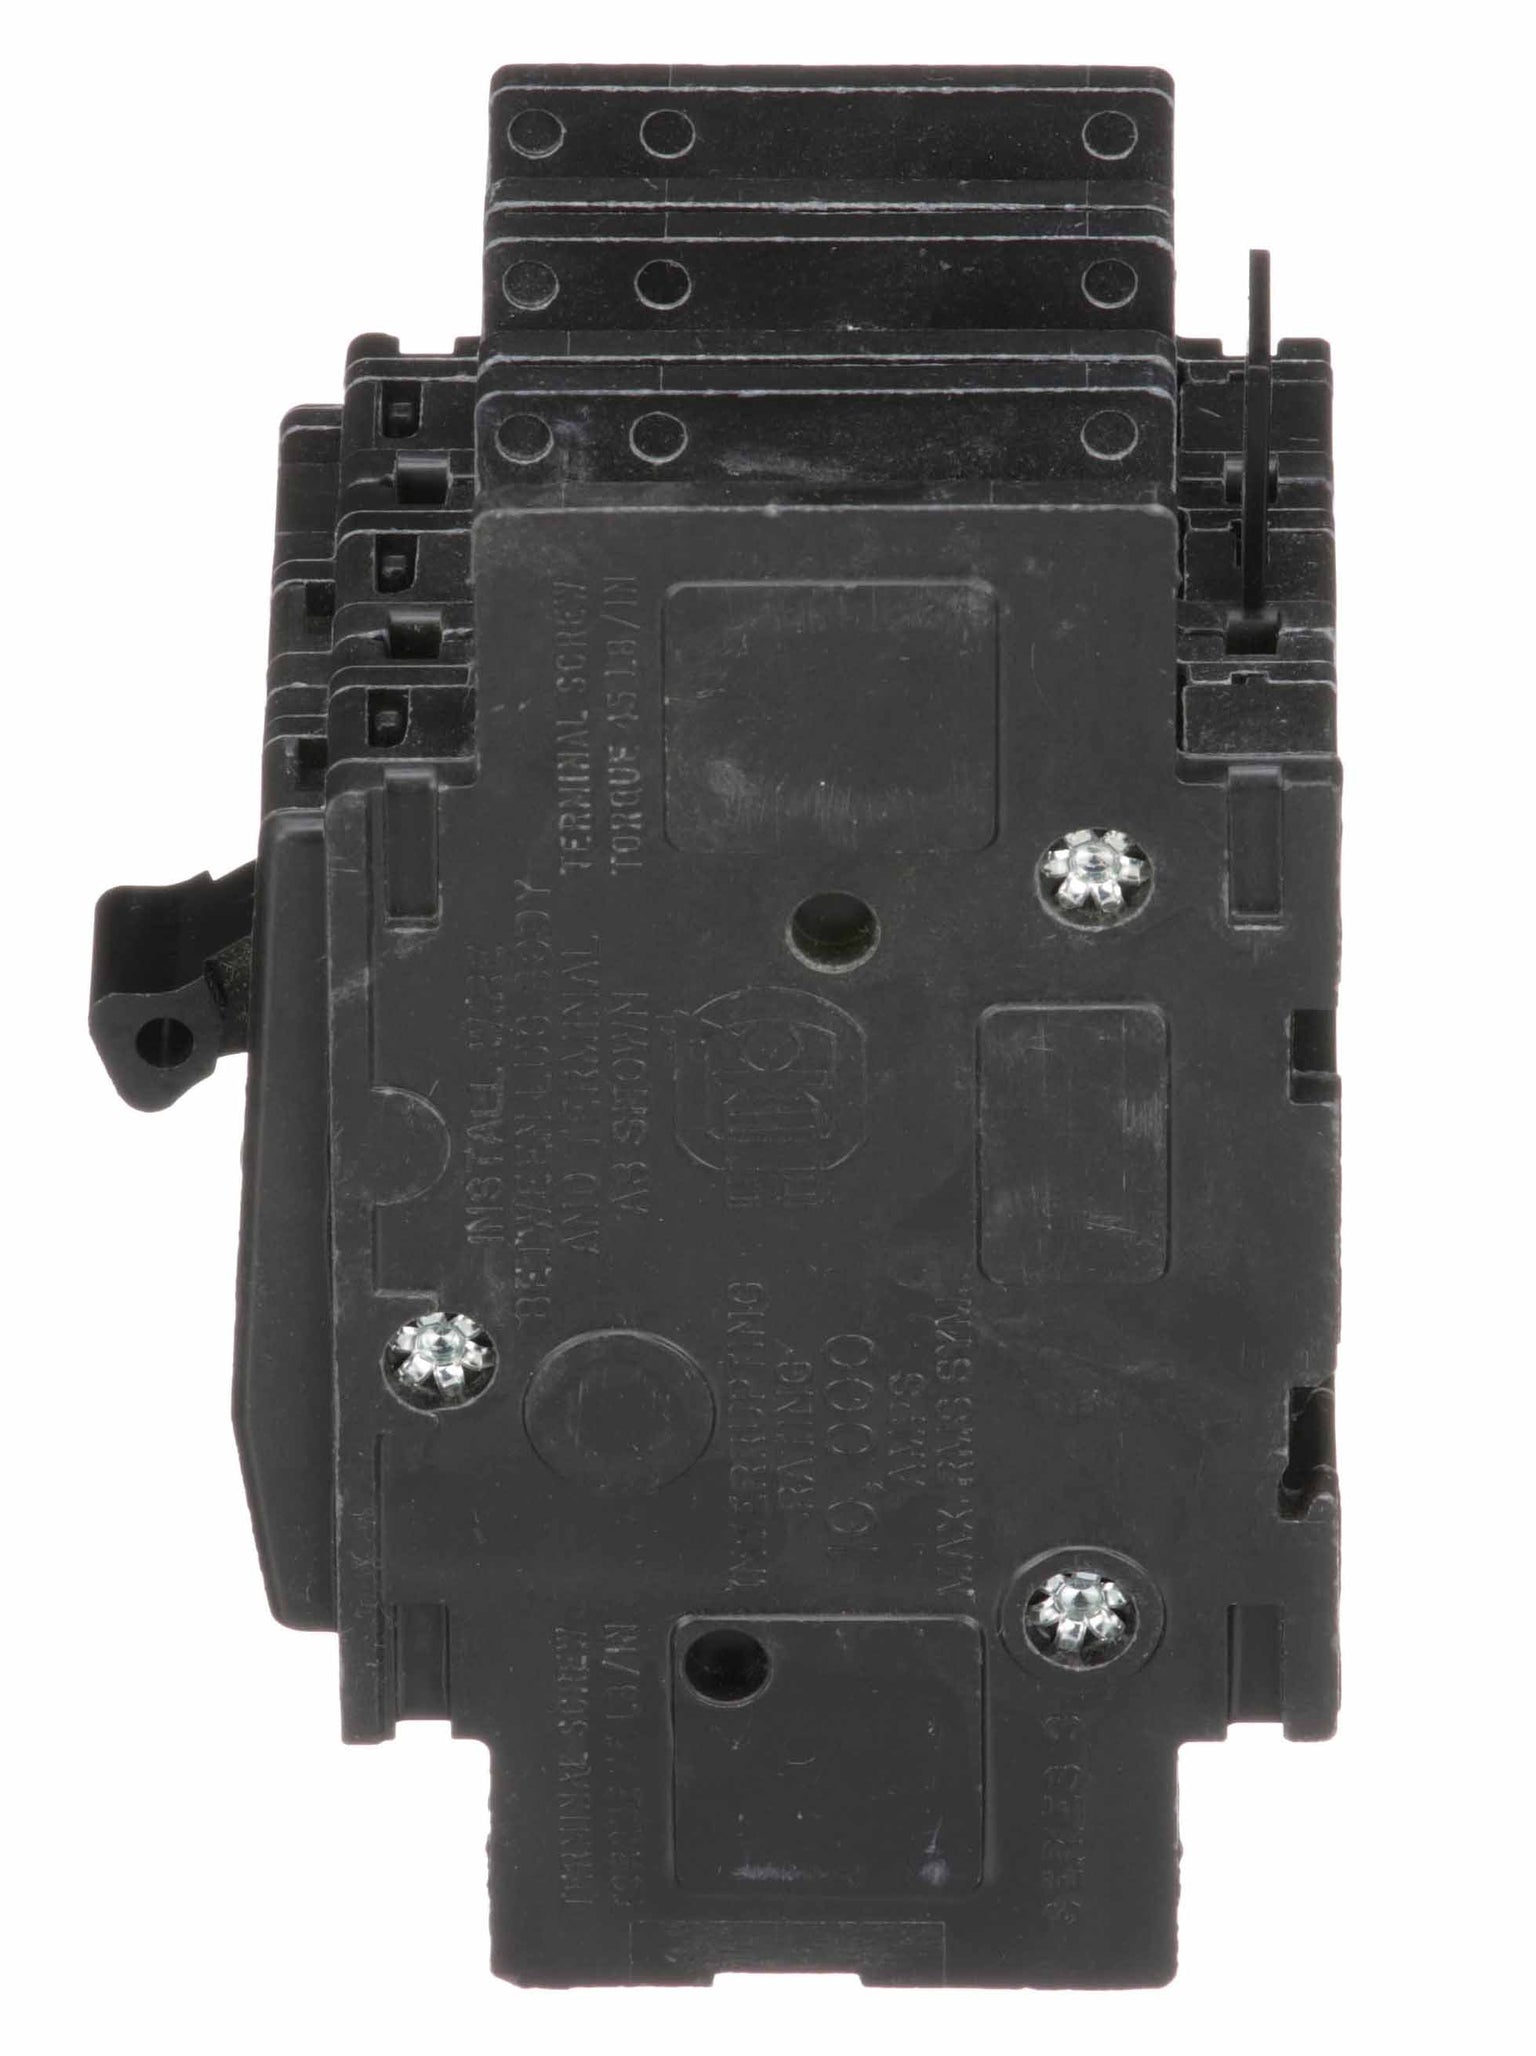 QOU390 - Square D - 90 Amp Circuit Breaker